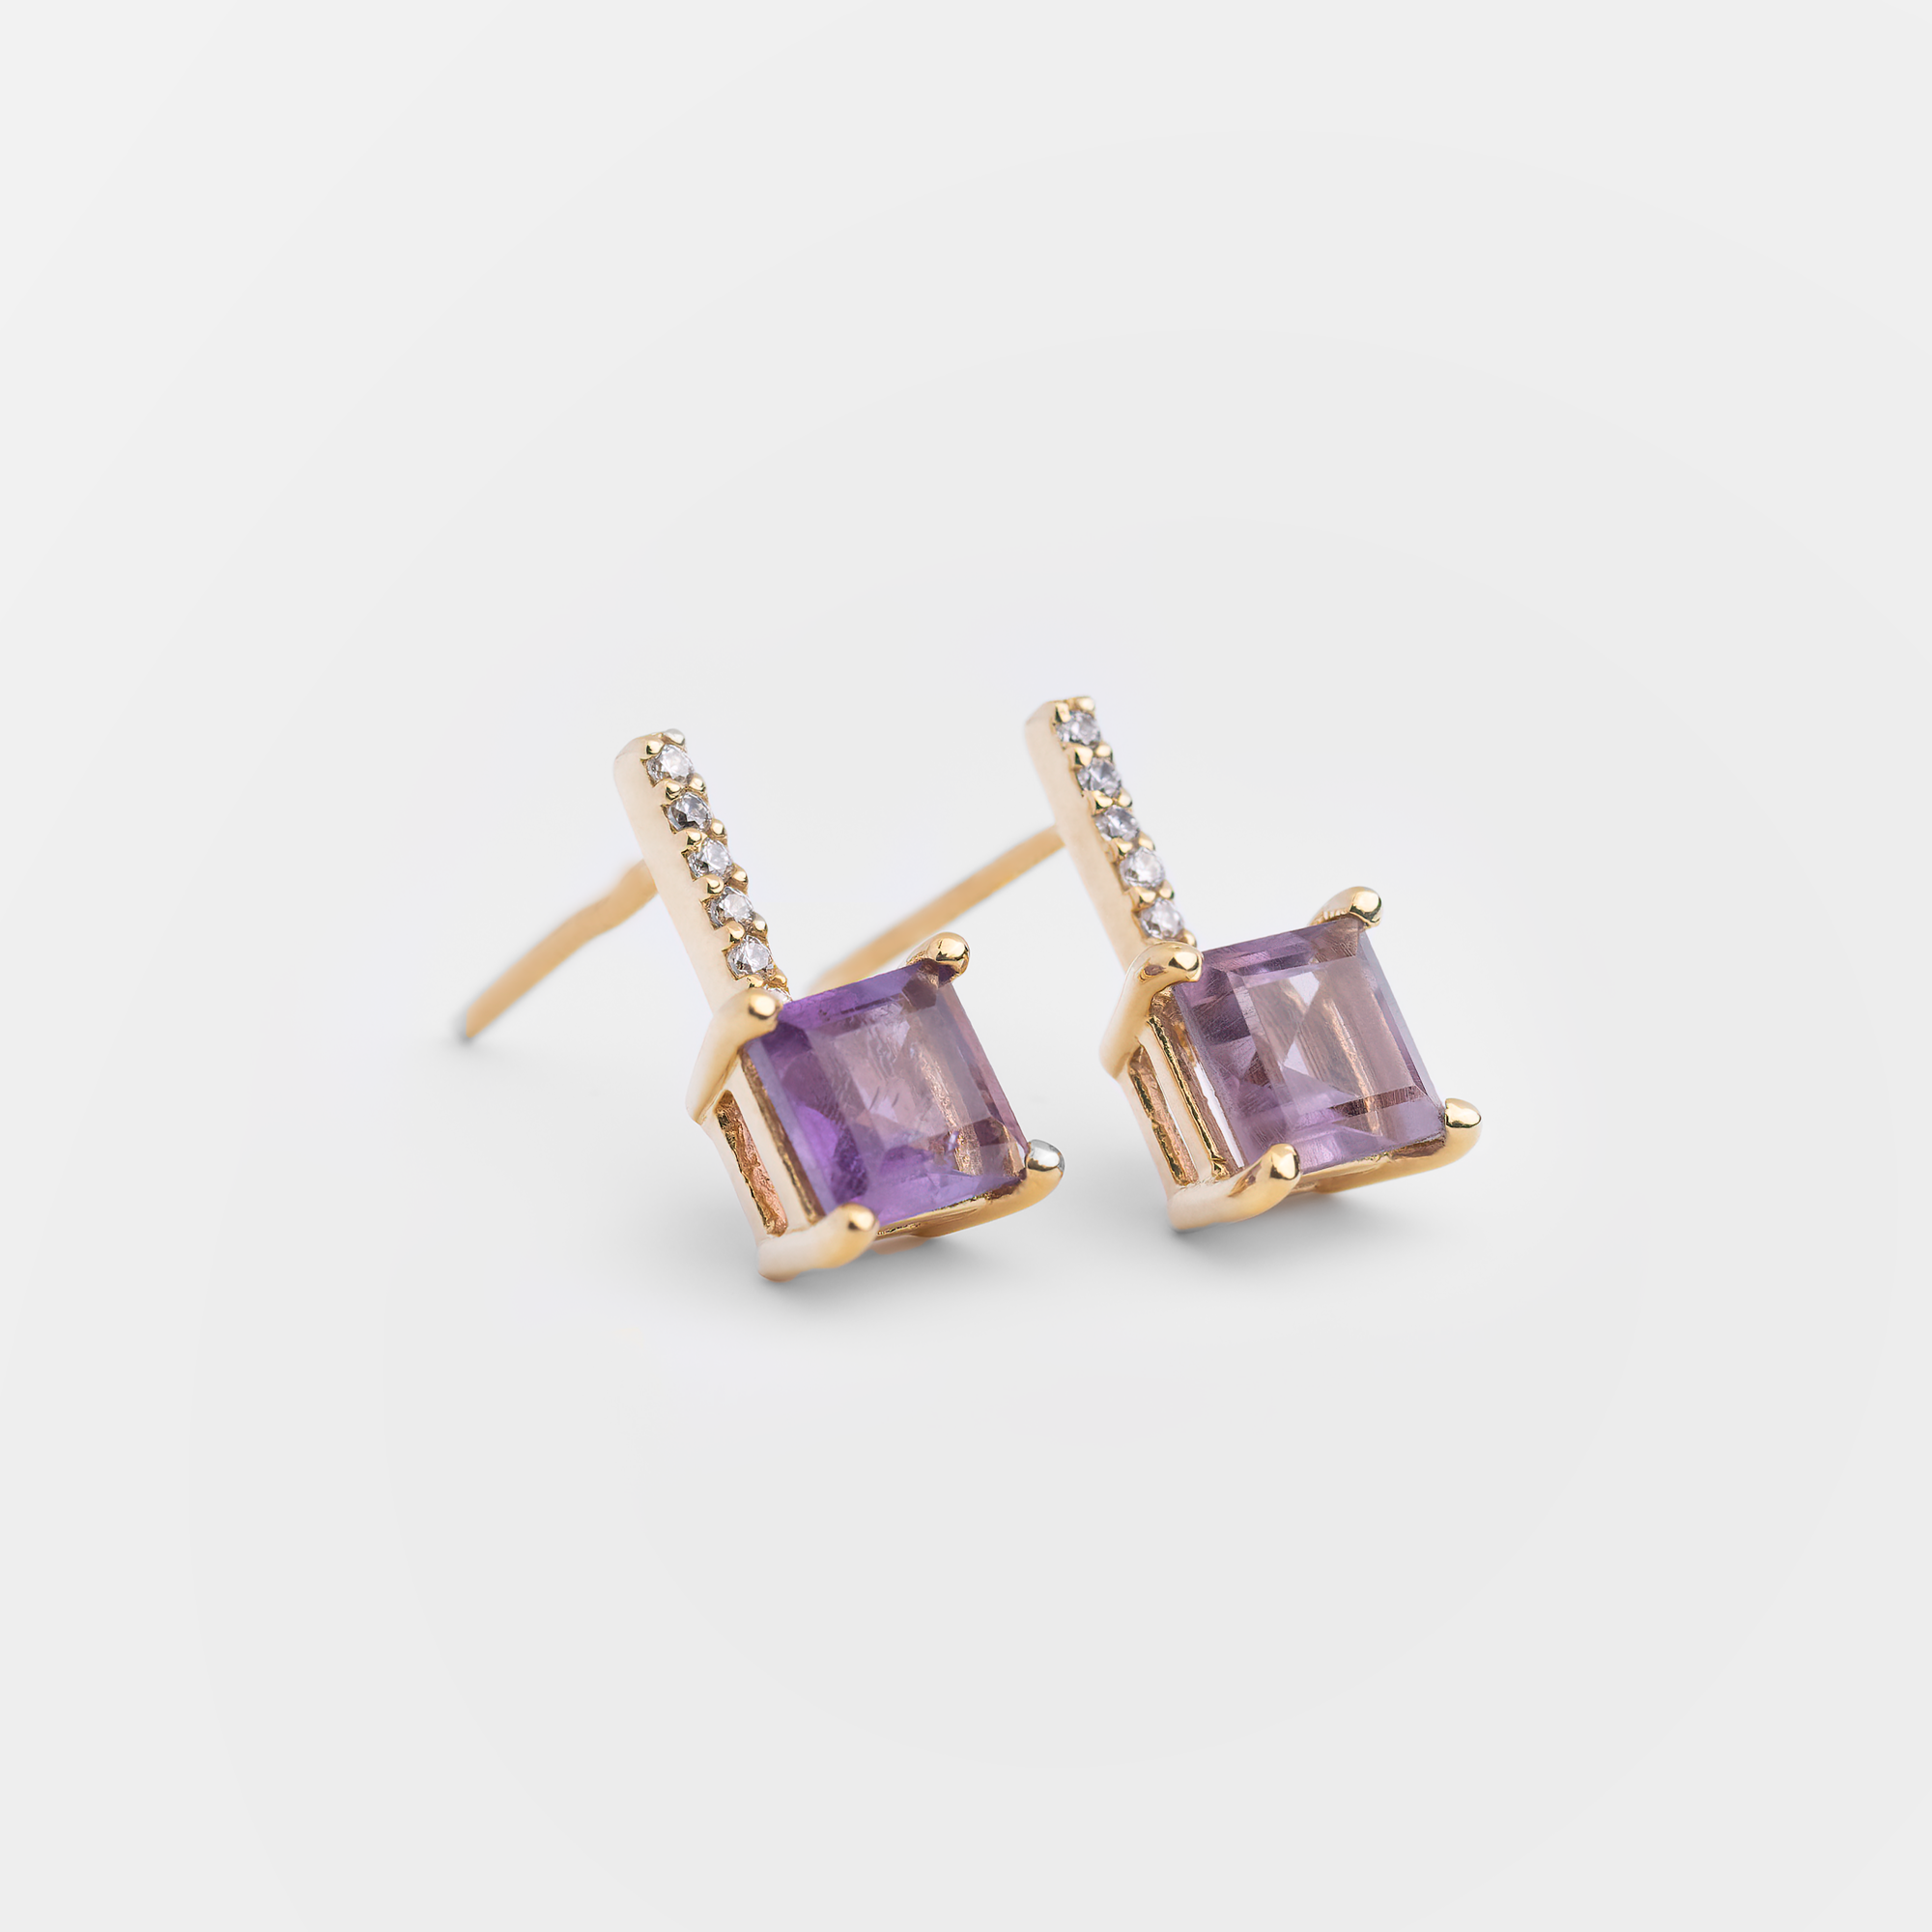 Moss - 18K Gold Vermeil Purple Amethyst Earrings - Zafeer